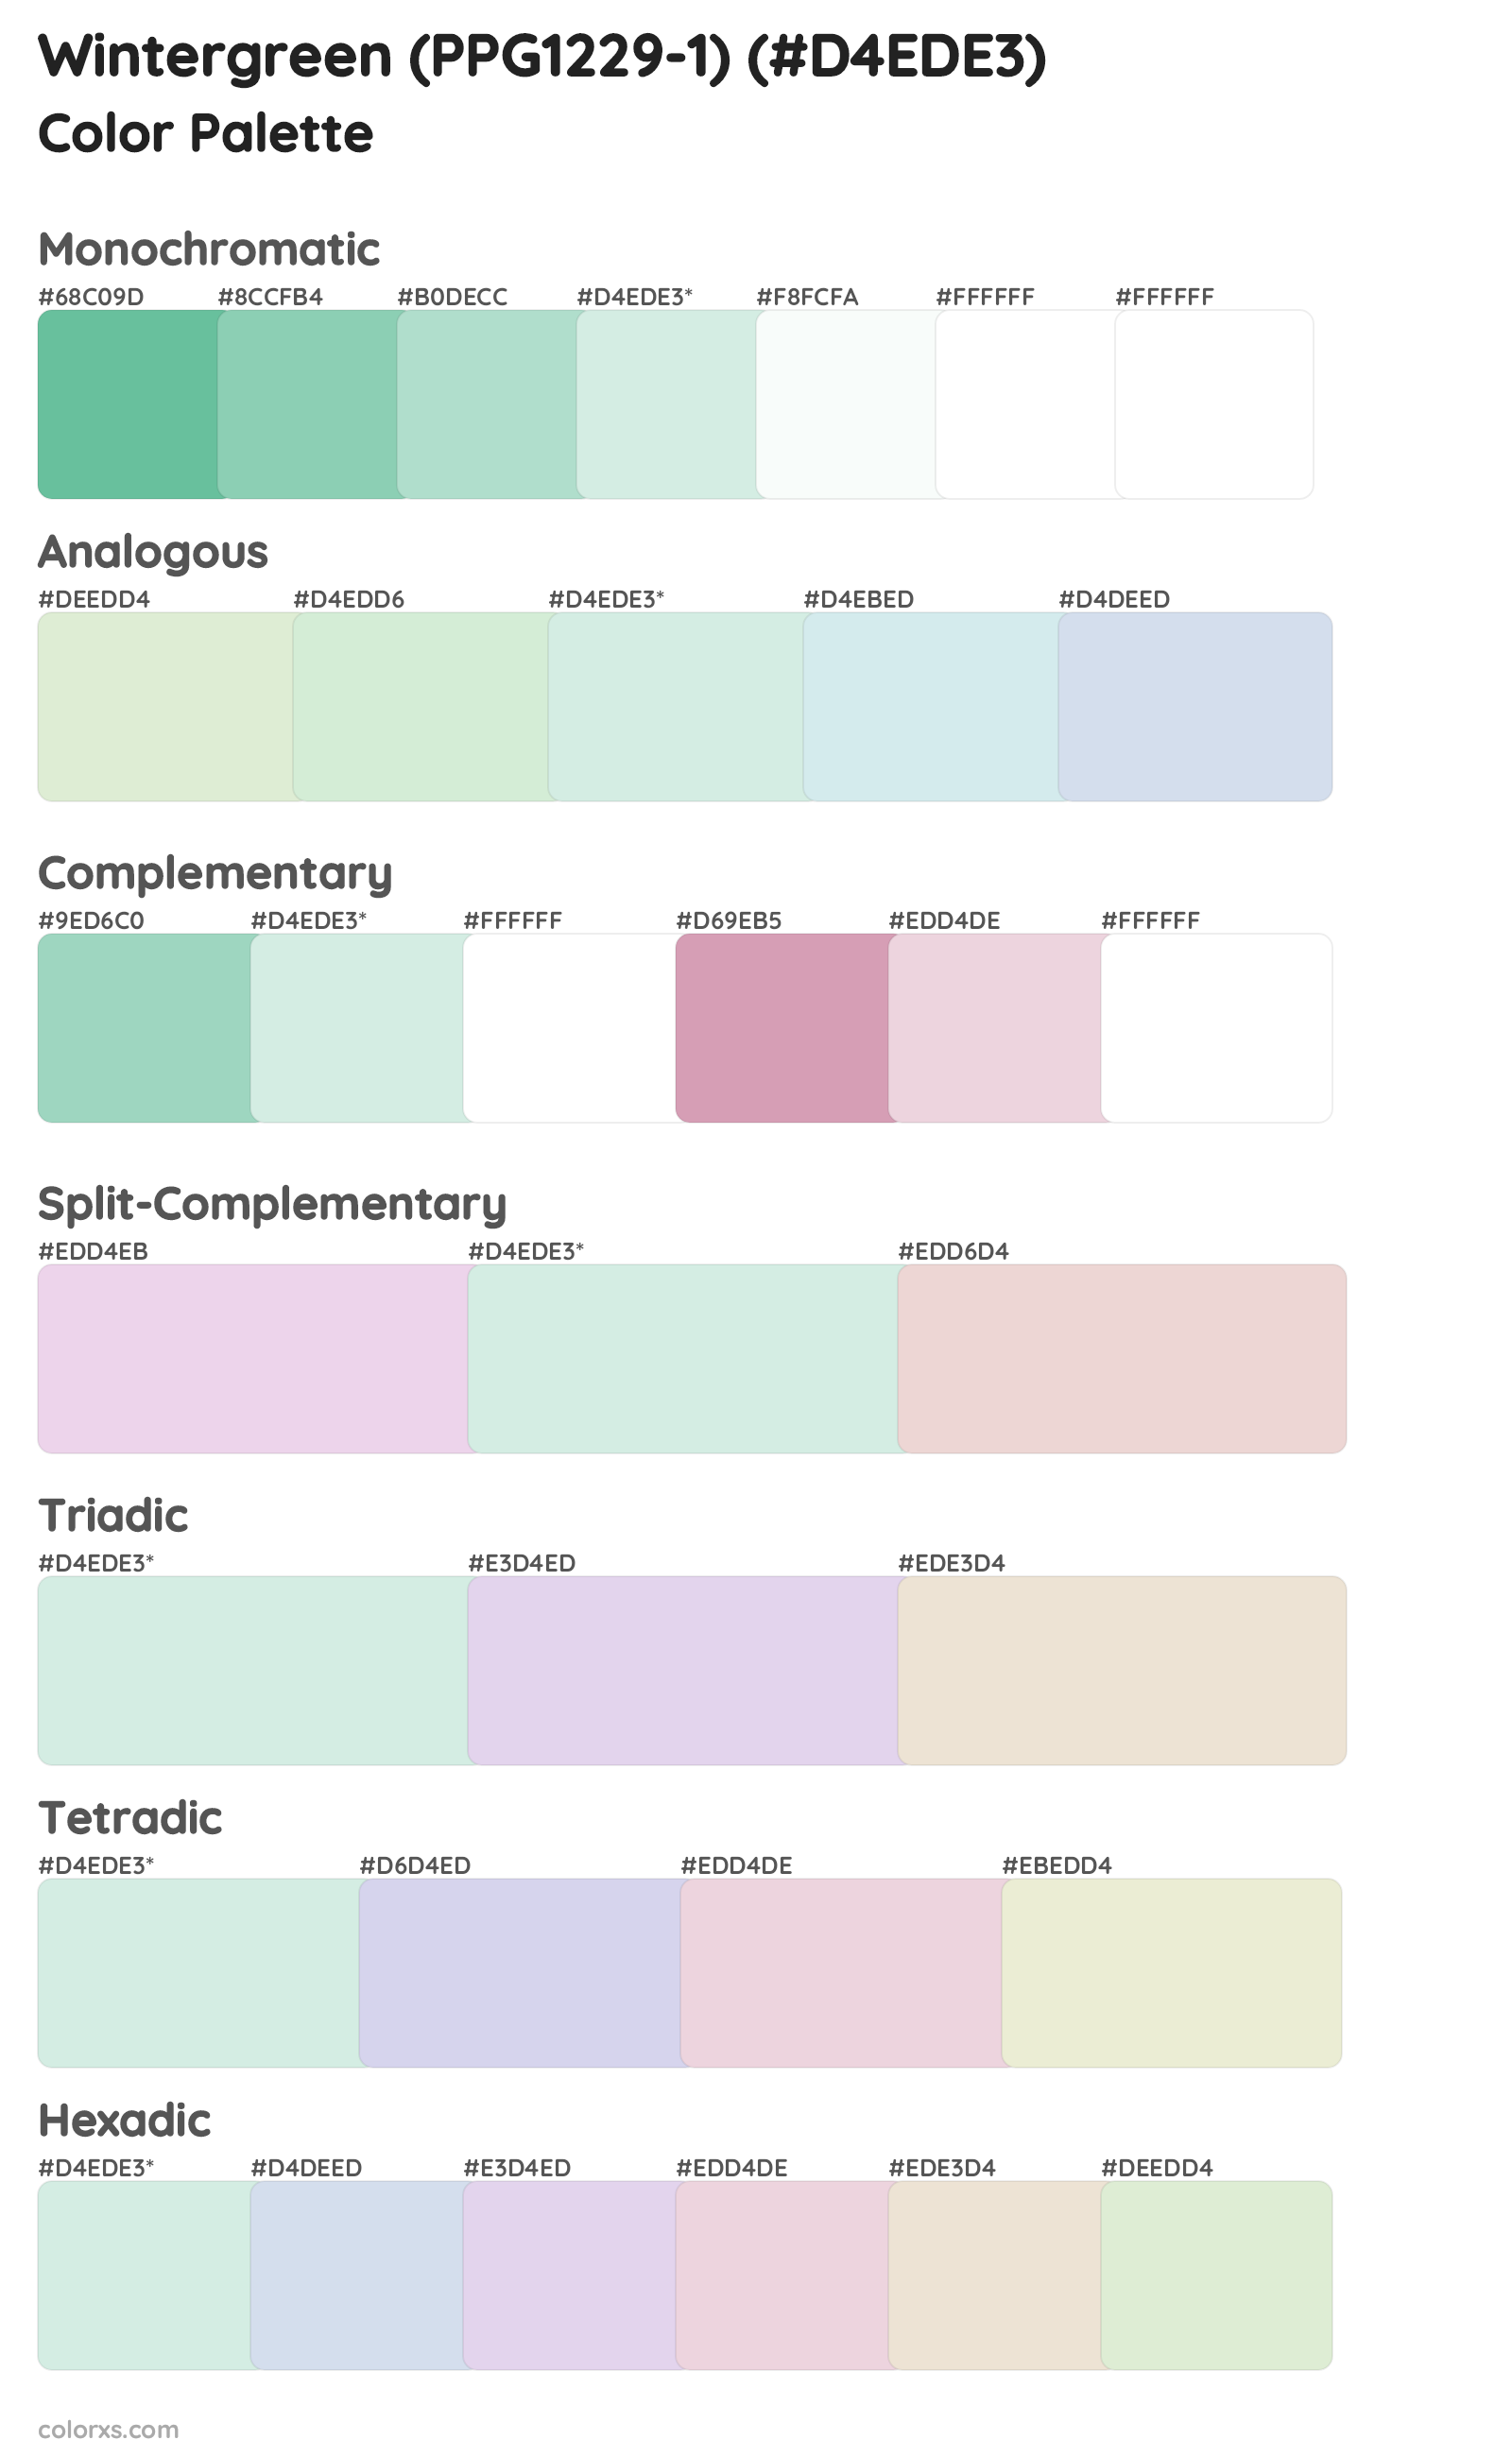 Wintergreen (PPG1229-1) Color Scheme Palettes